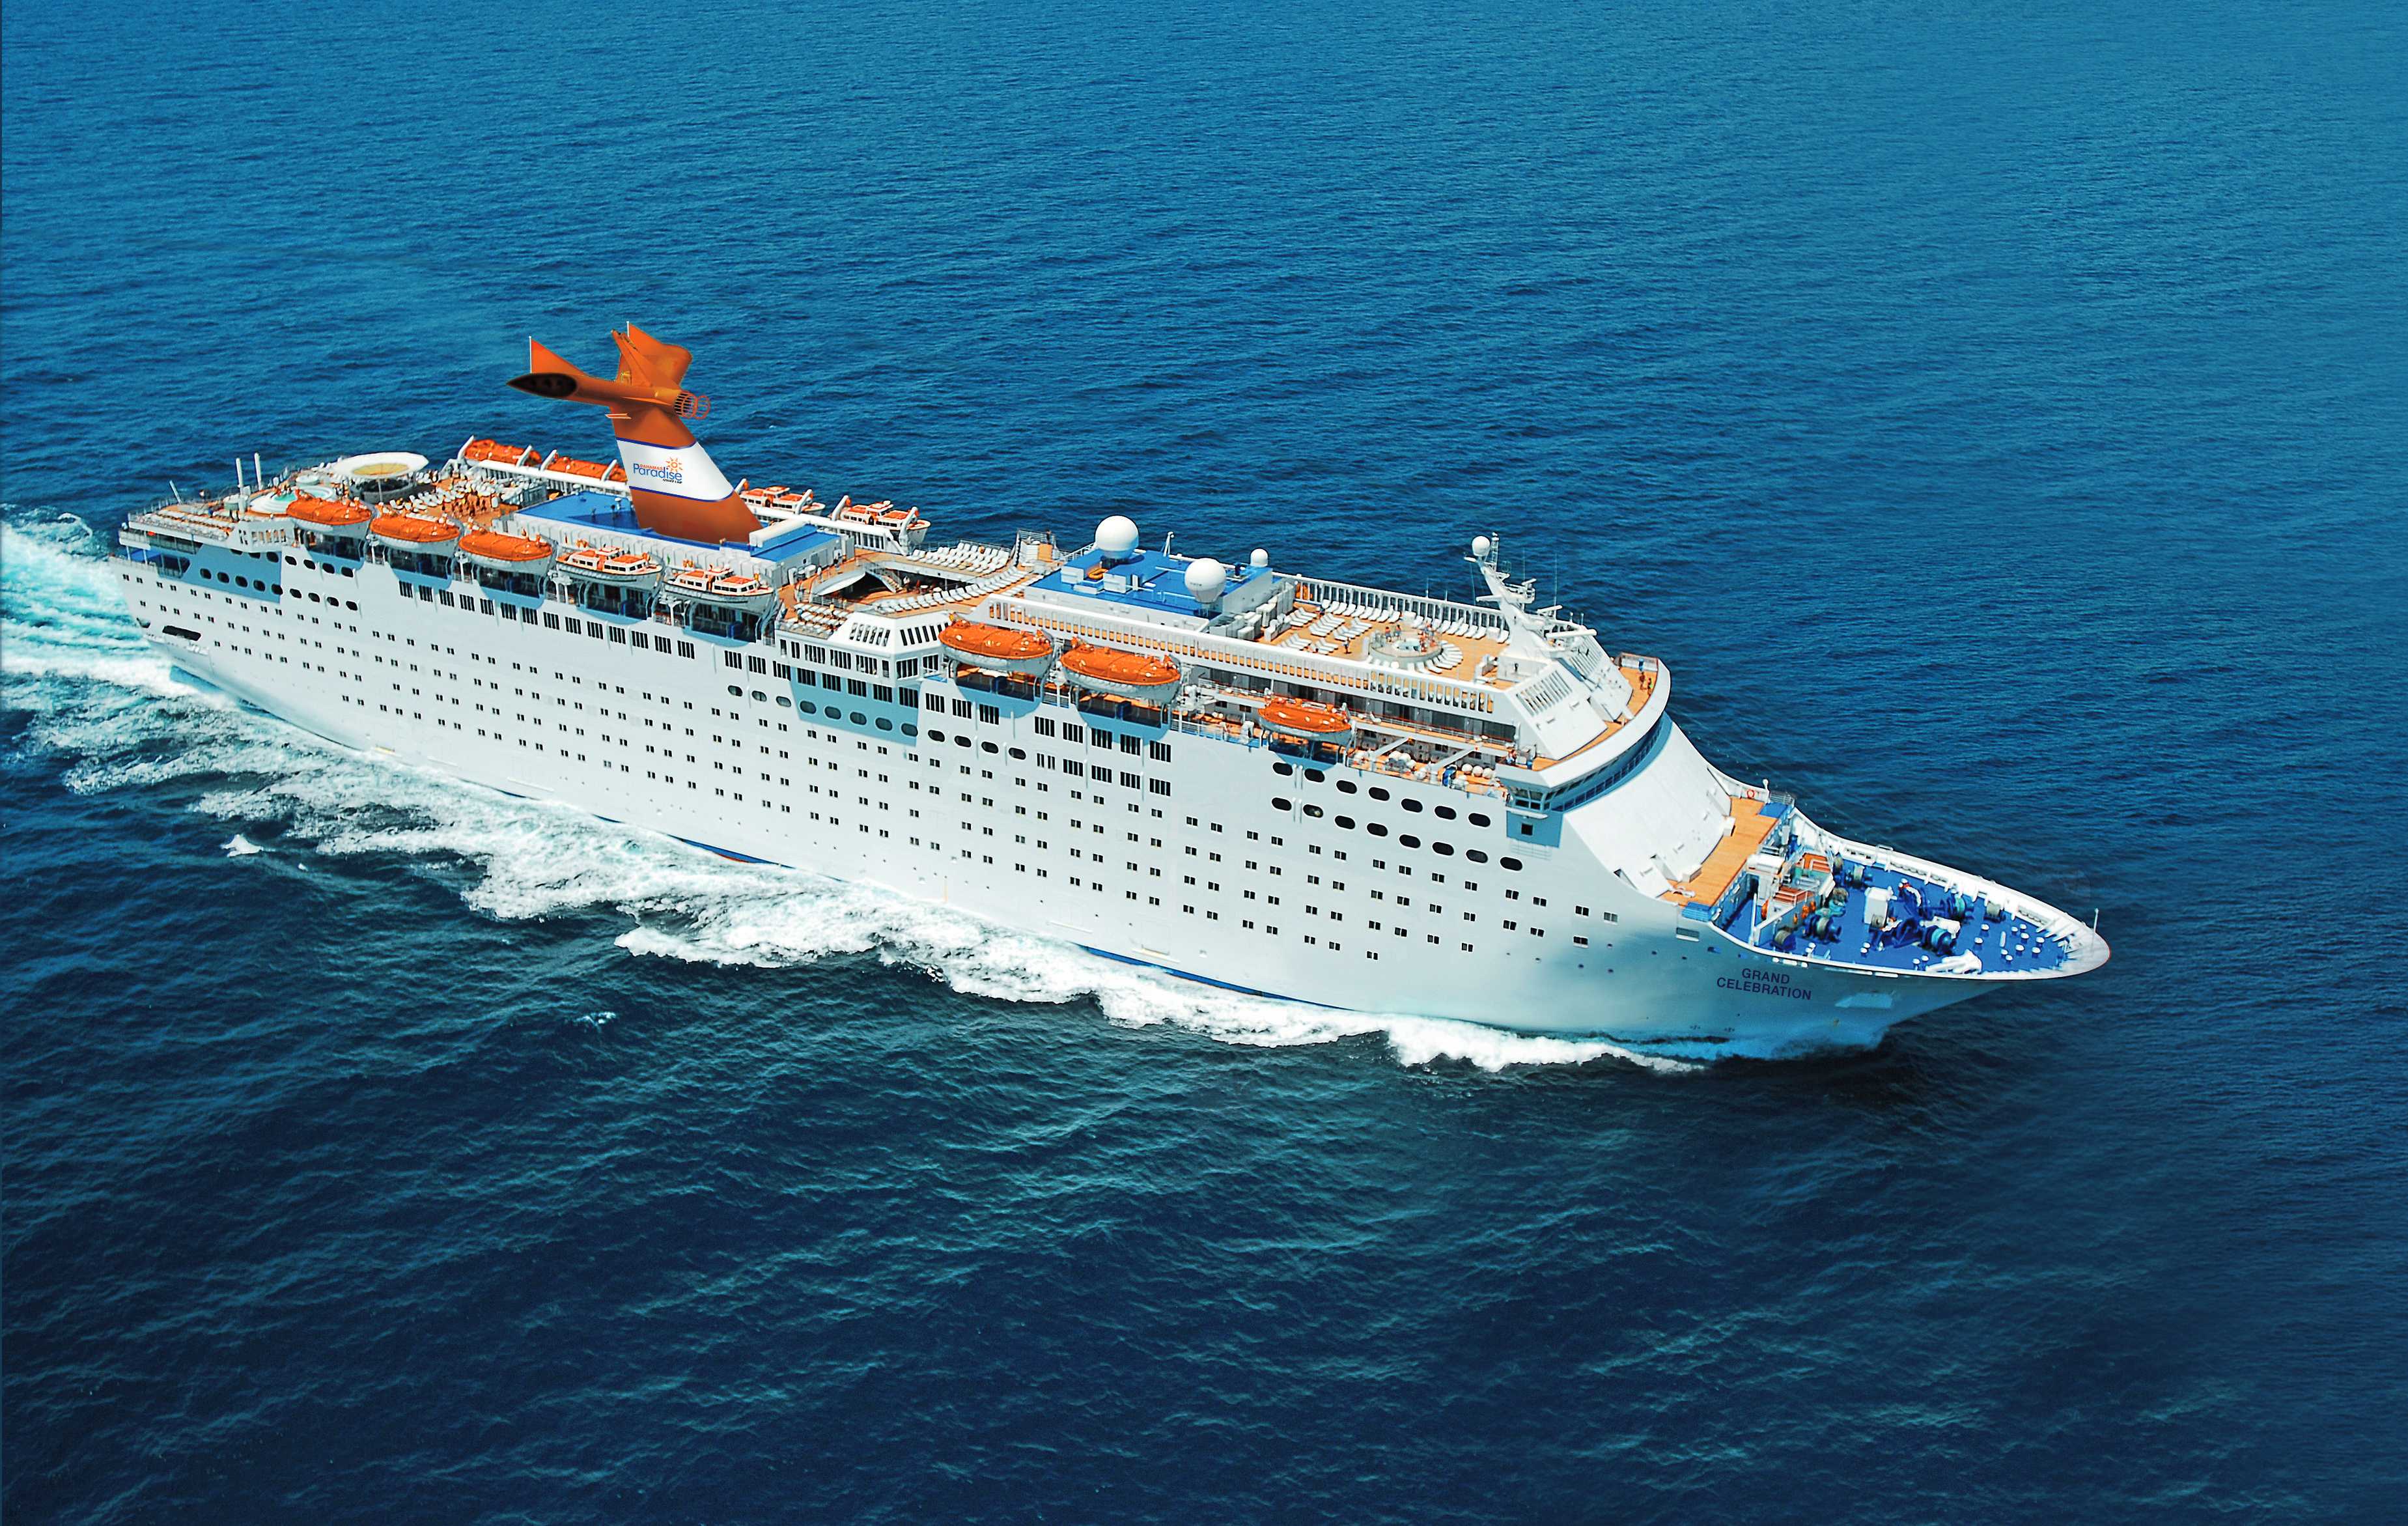 Bahamas Paradise cruise ship